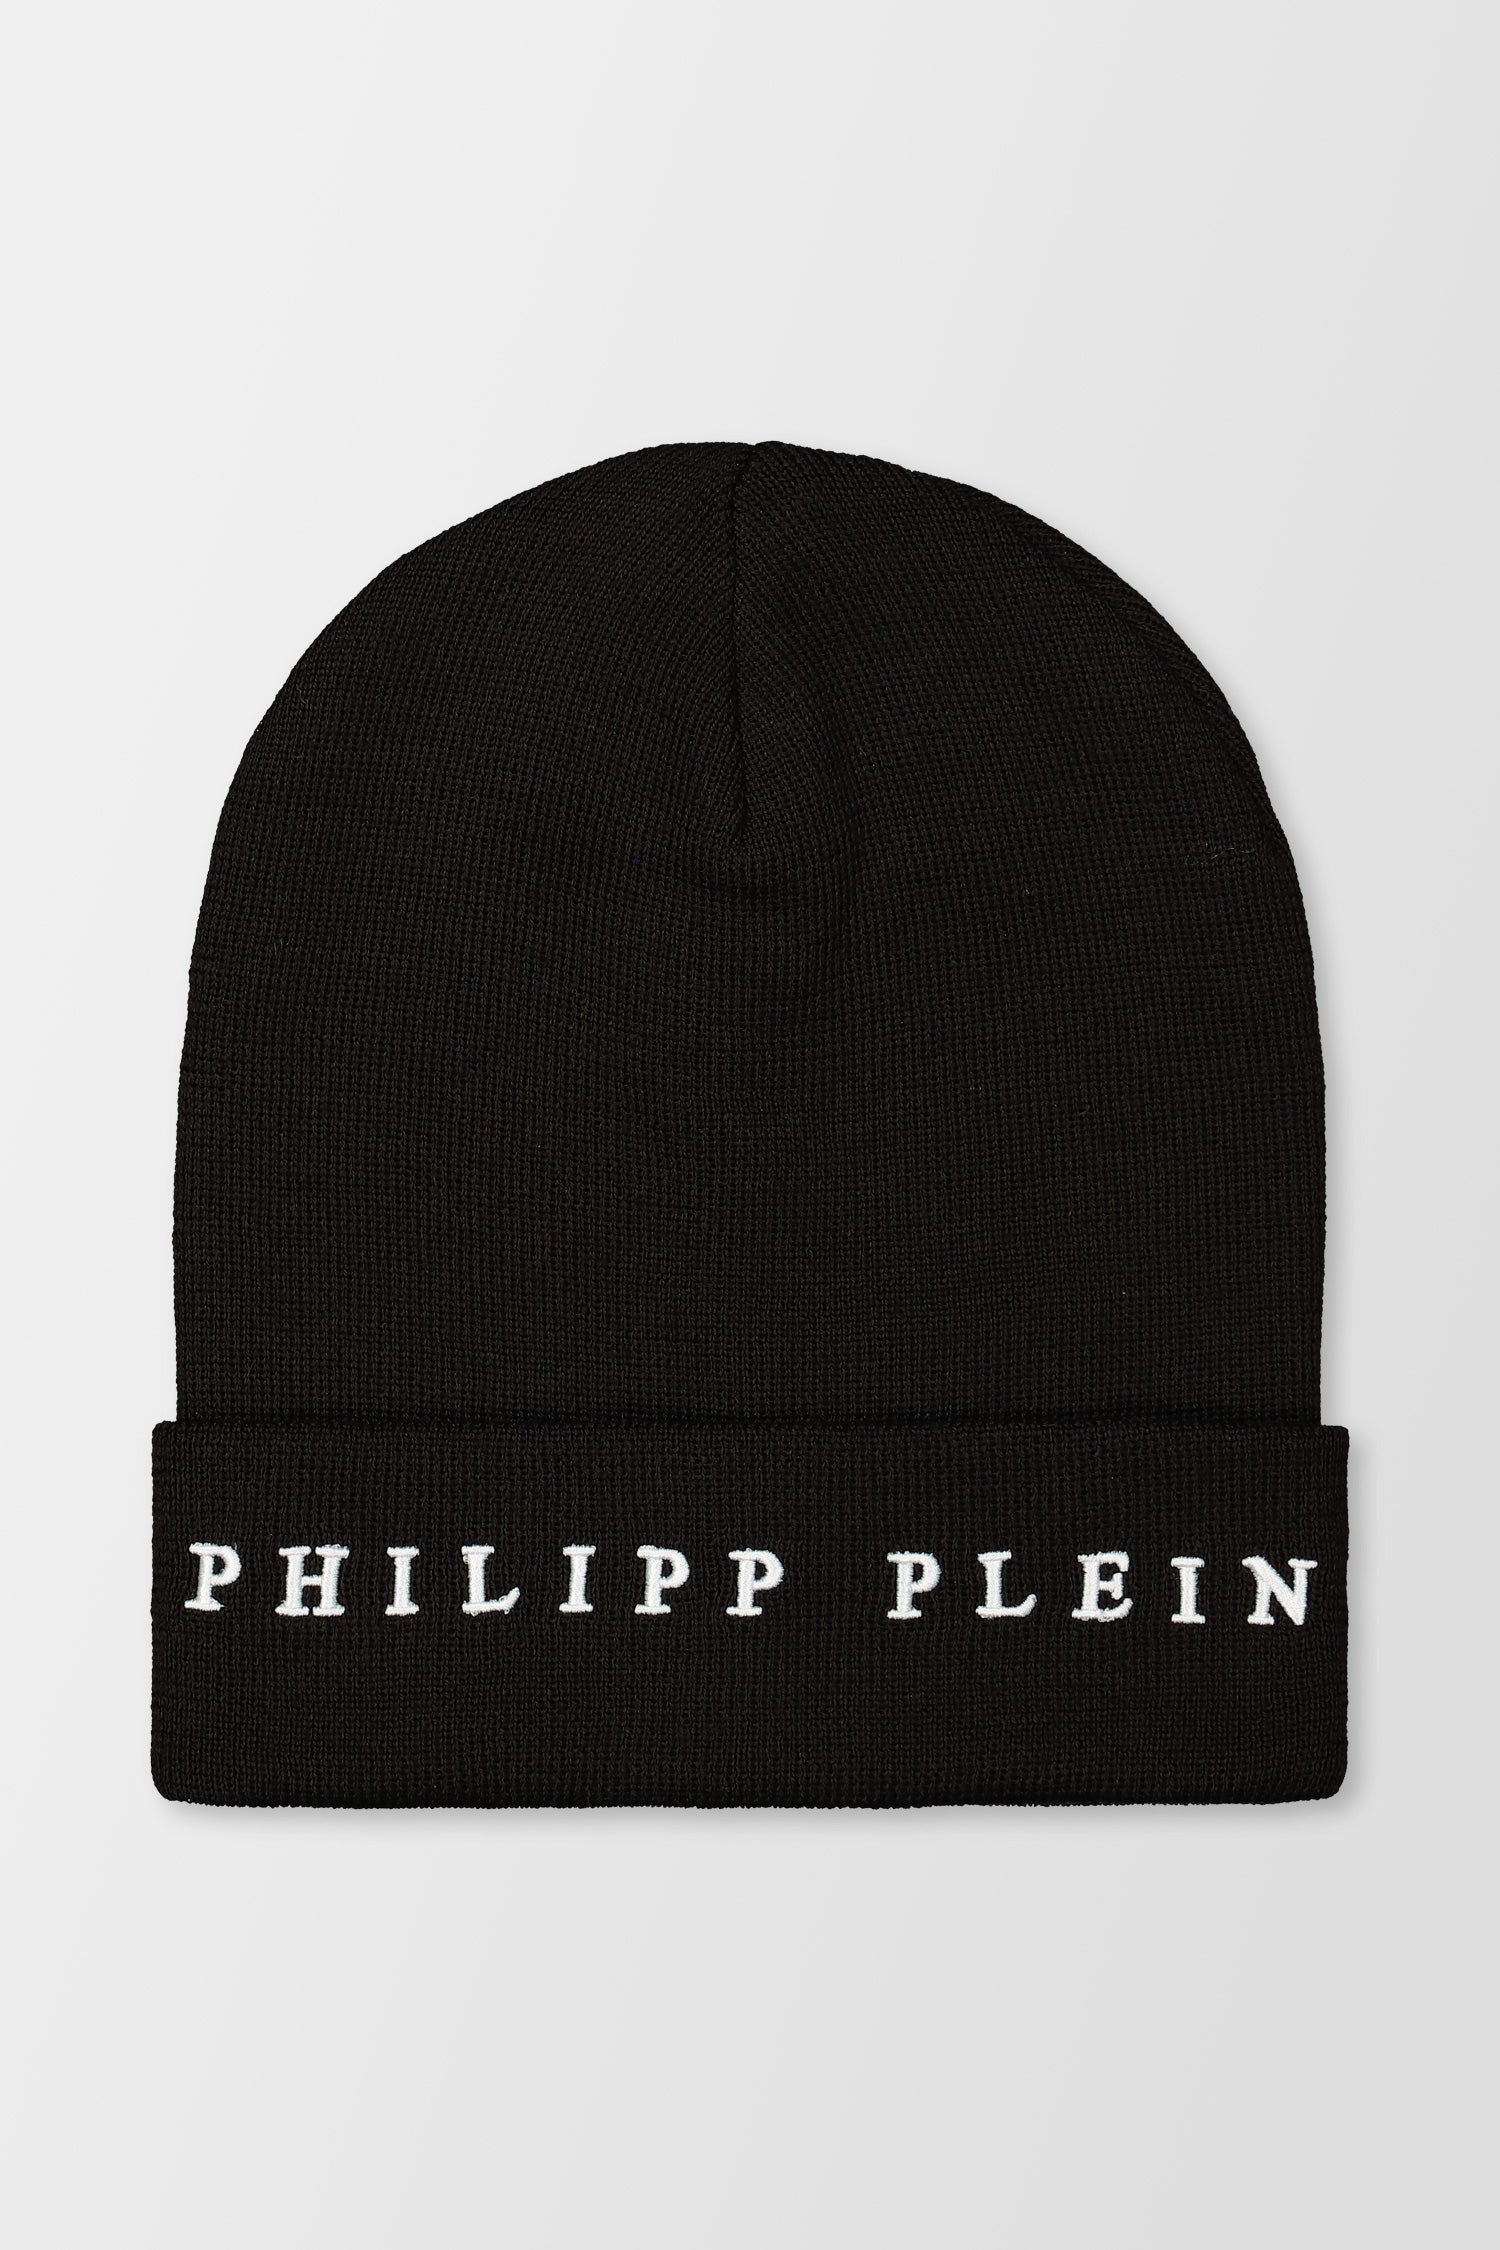 Philipp Plein Black Wool Blend Hat